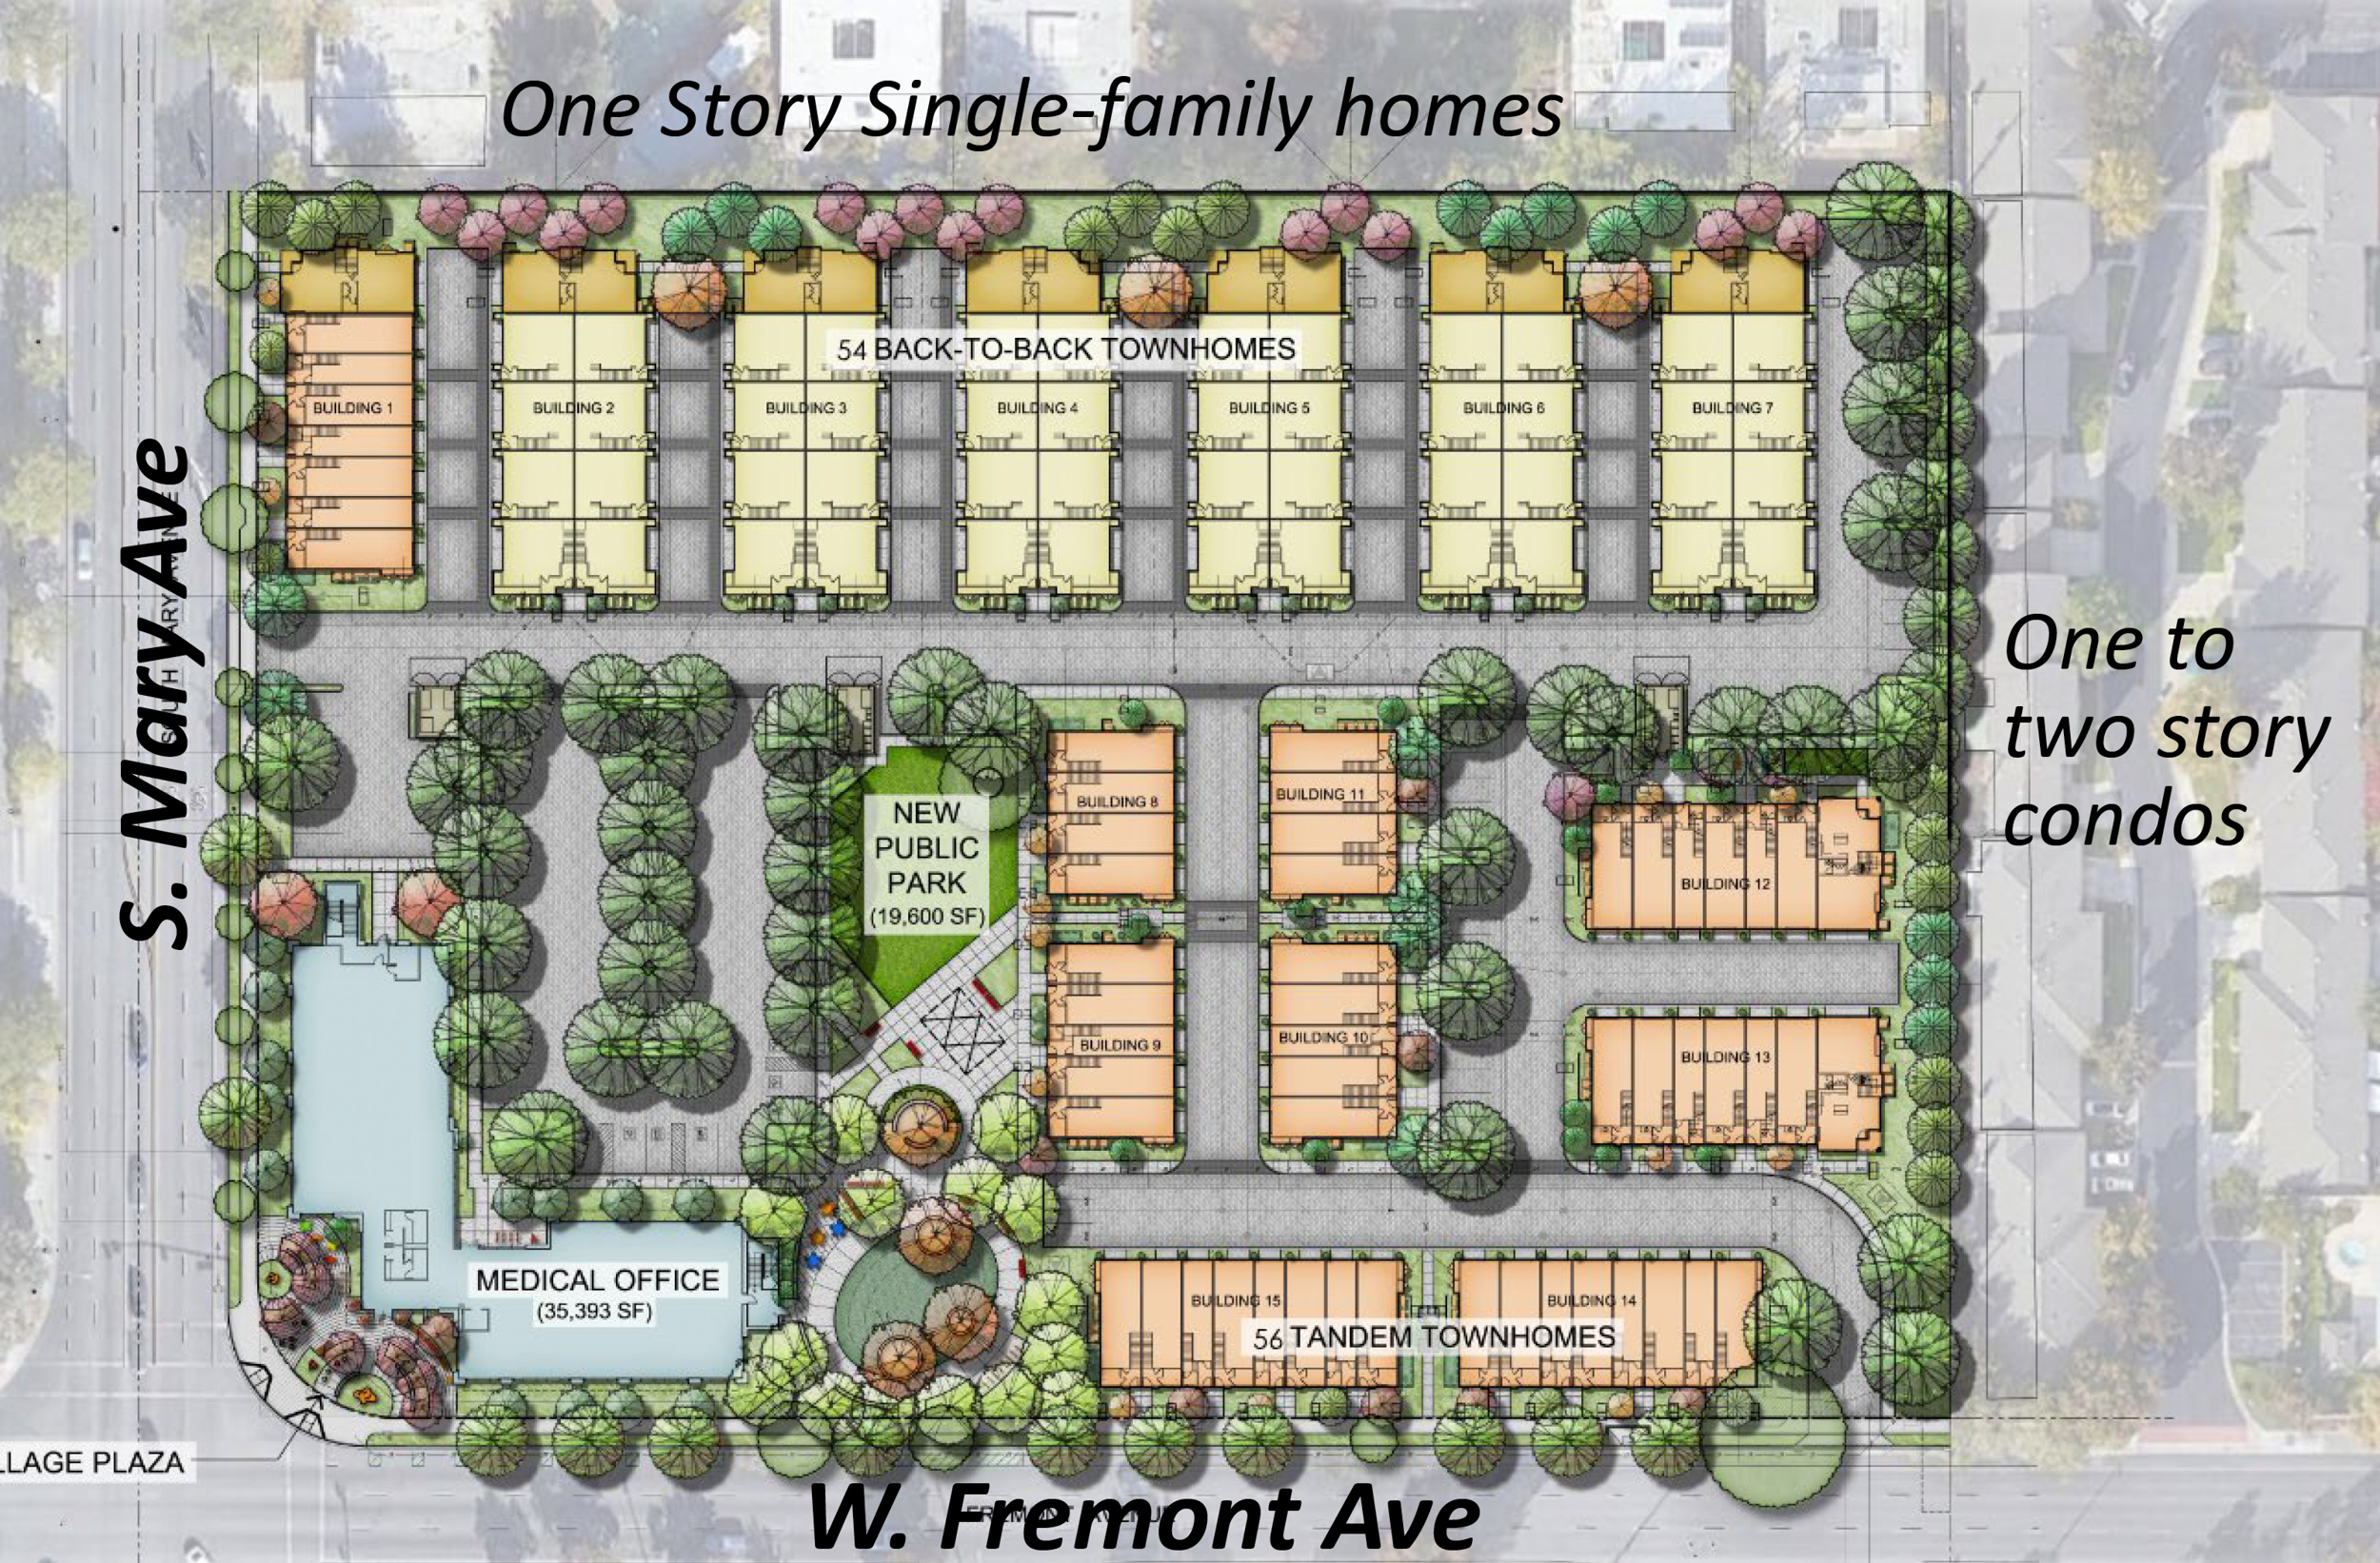 877 West Fremont Avenue site map